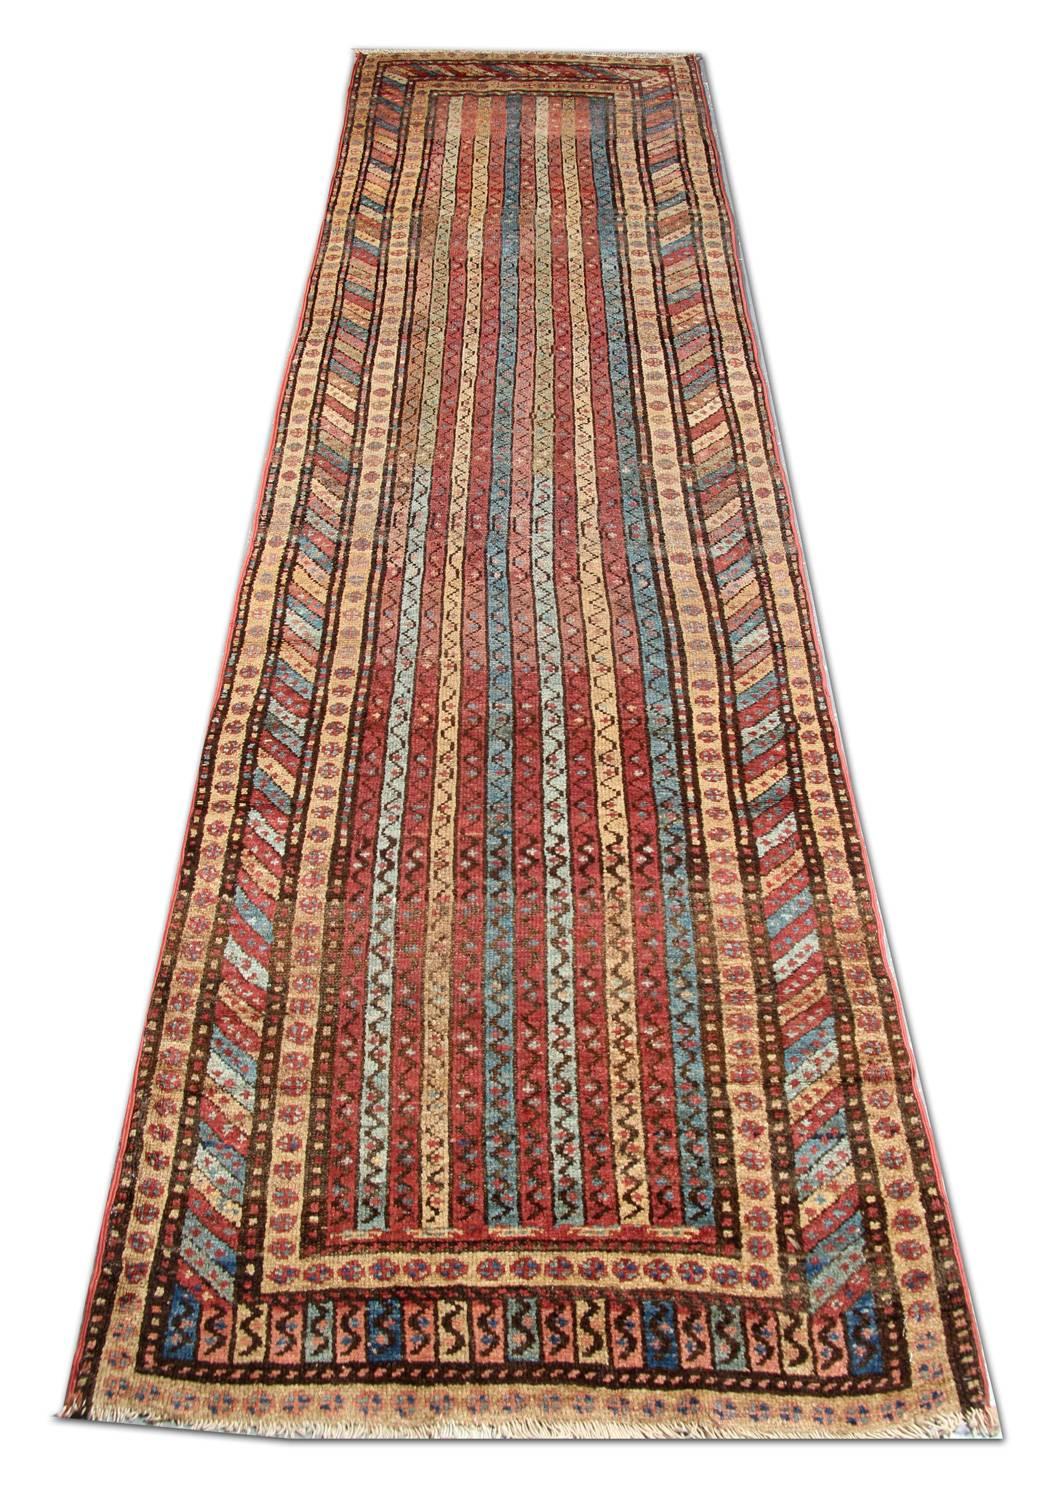 Dieser antike gestreifte Teppich aus Schirwan ist ein handgefertigter Orientteppich, der aus traditionellen Nomadenteppichen hervorgegangen ist. Er zeichnet sich durch eine spektakuläre Anordnung von modularen Streifen und klassischen Randmotiven